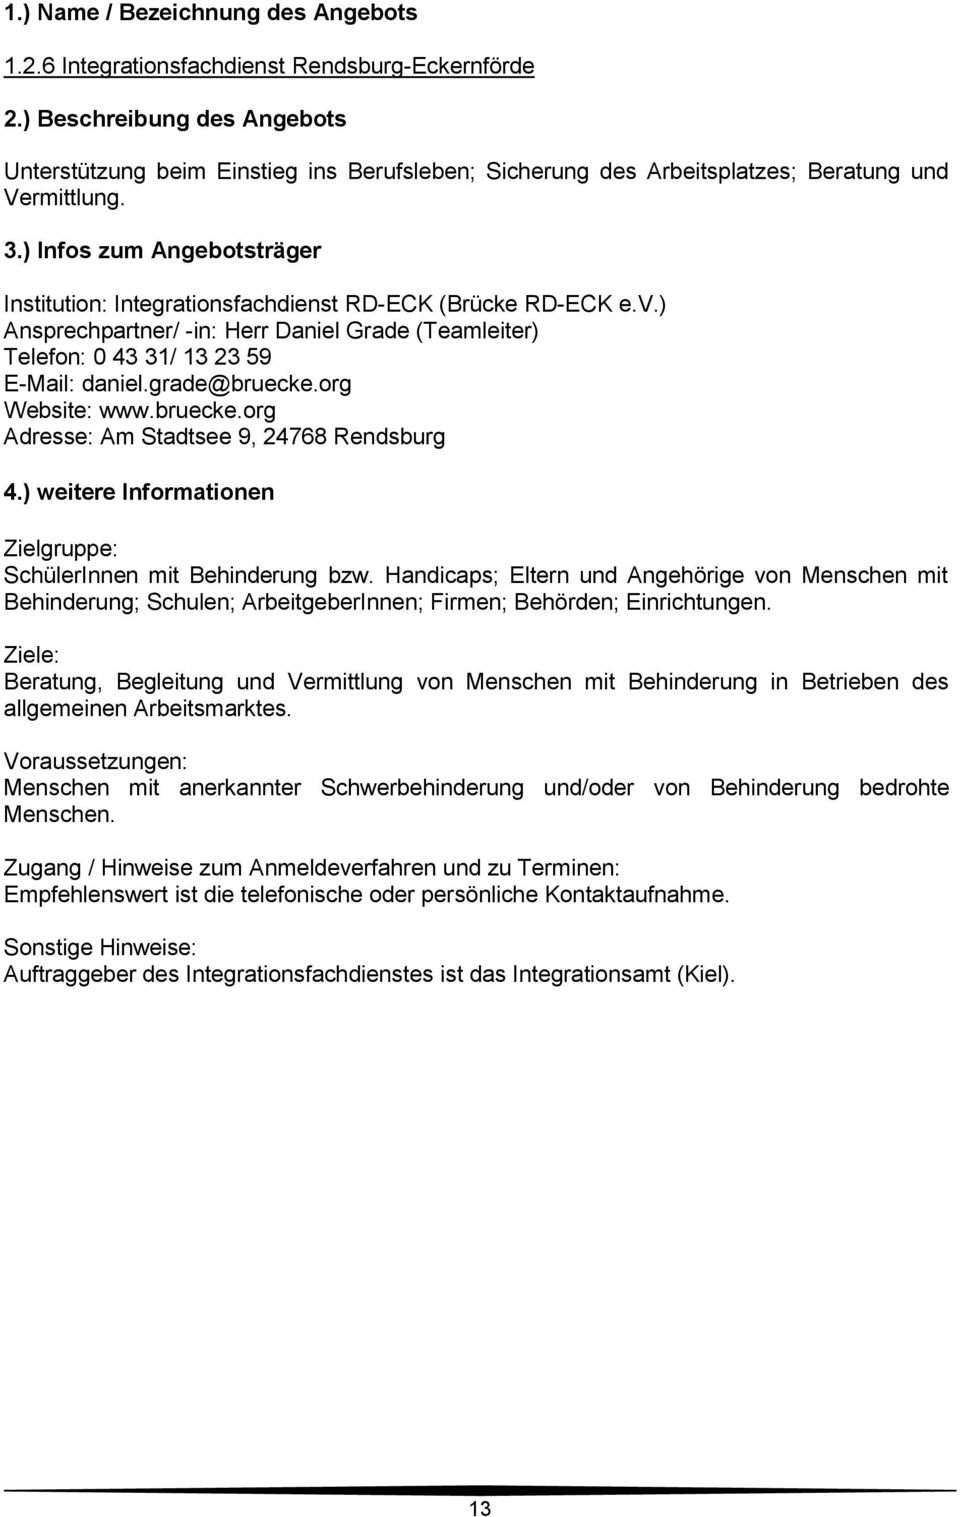 org Website: www.bruecke.org Adresse: Am Stadtsee 9, 24768 Rendsburg Zielgruppe: SchülerInnen mit Behinderung bzw.